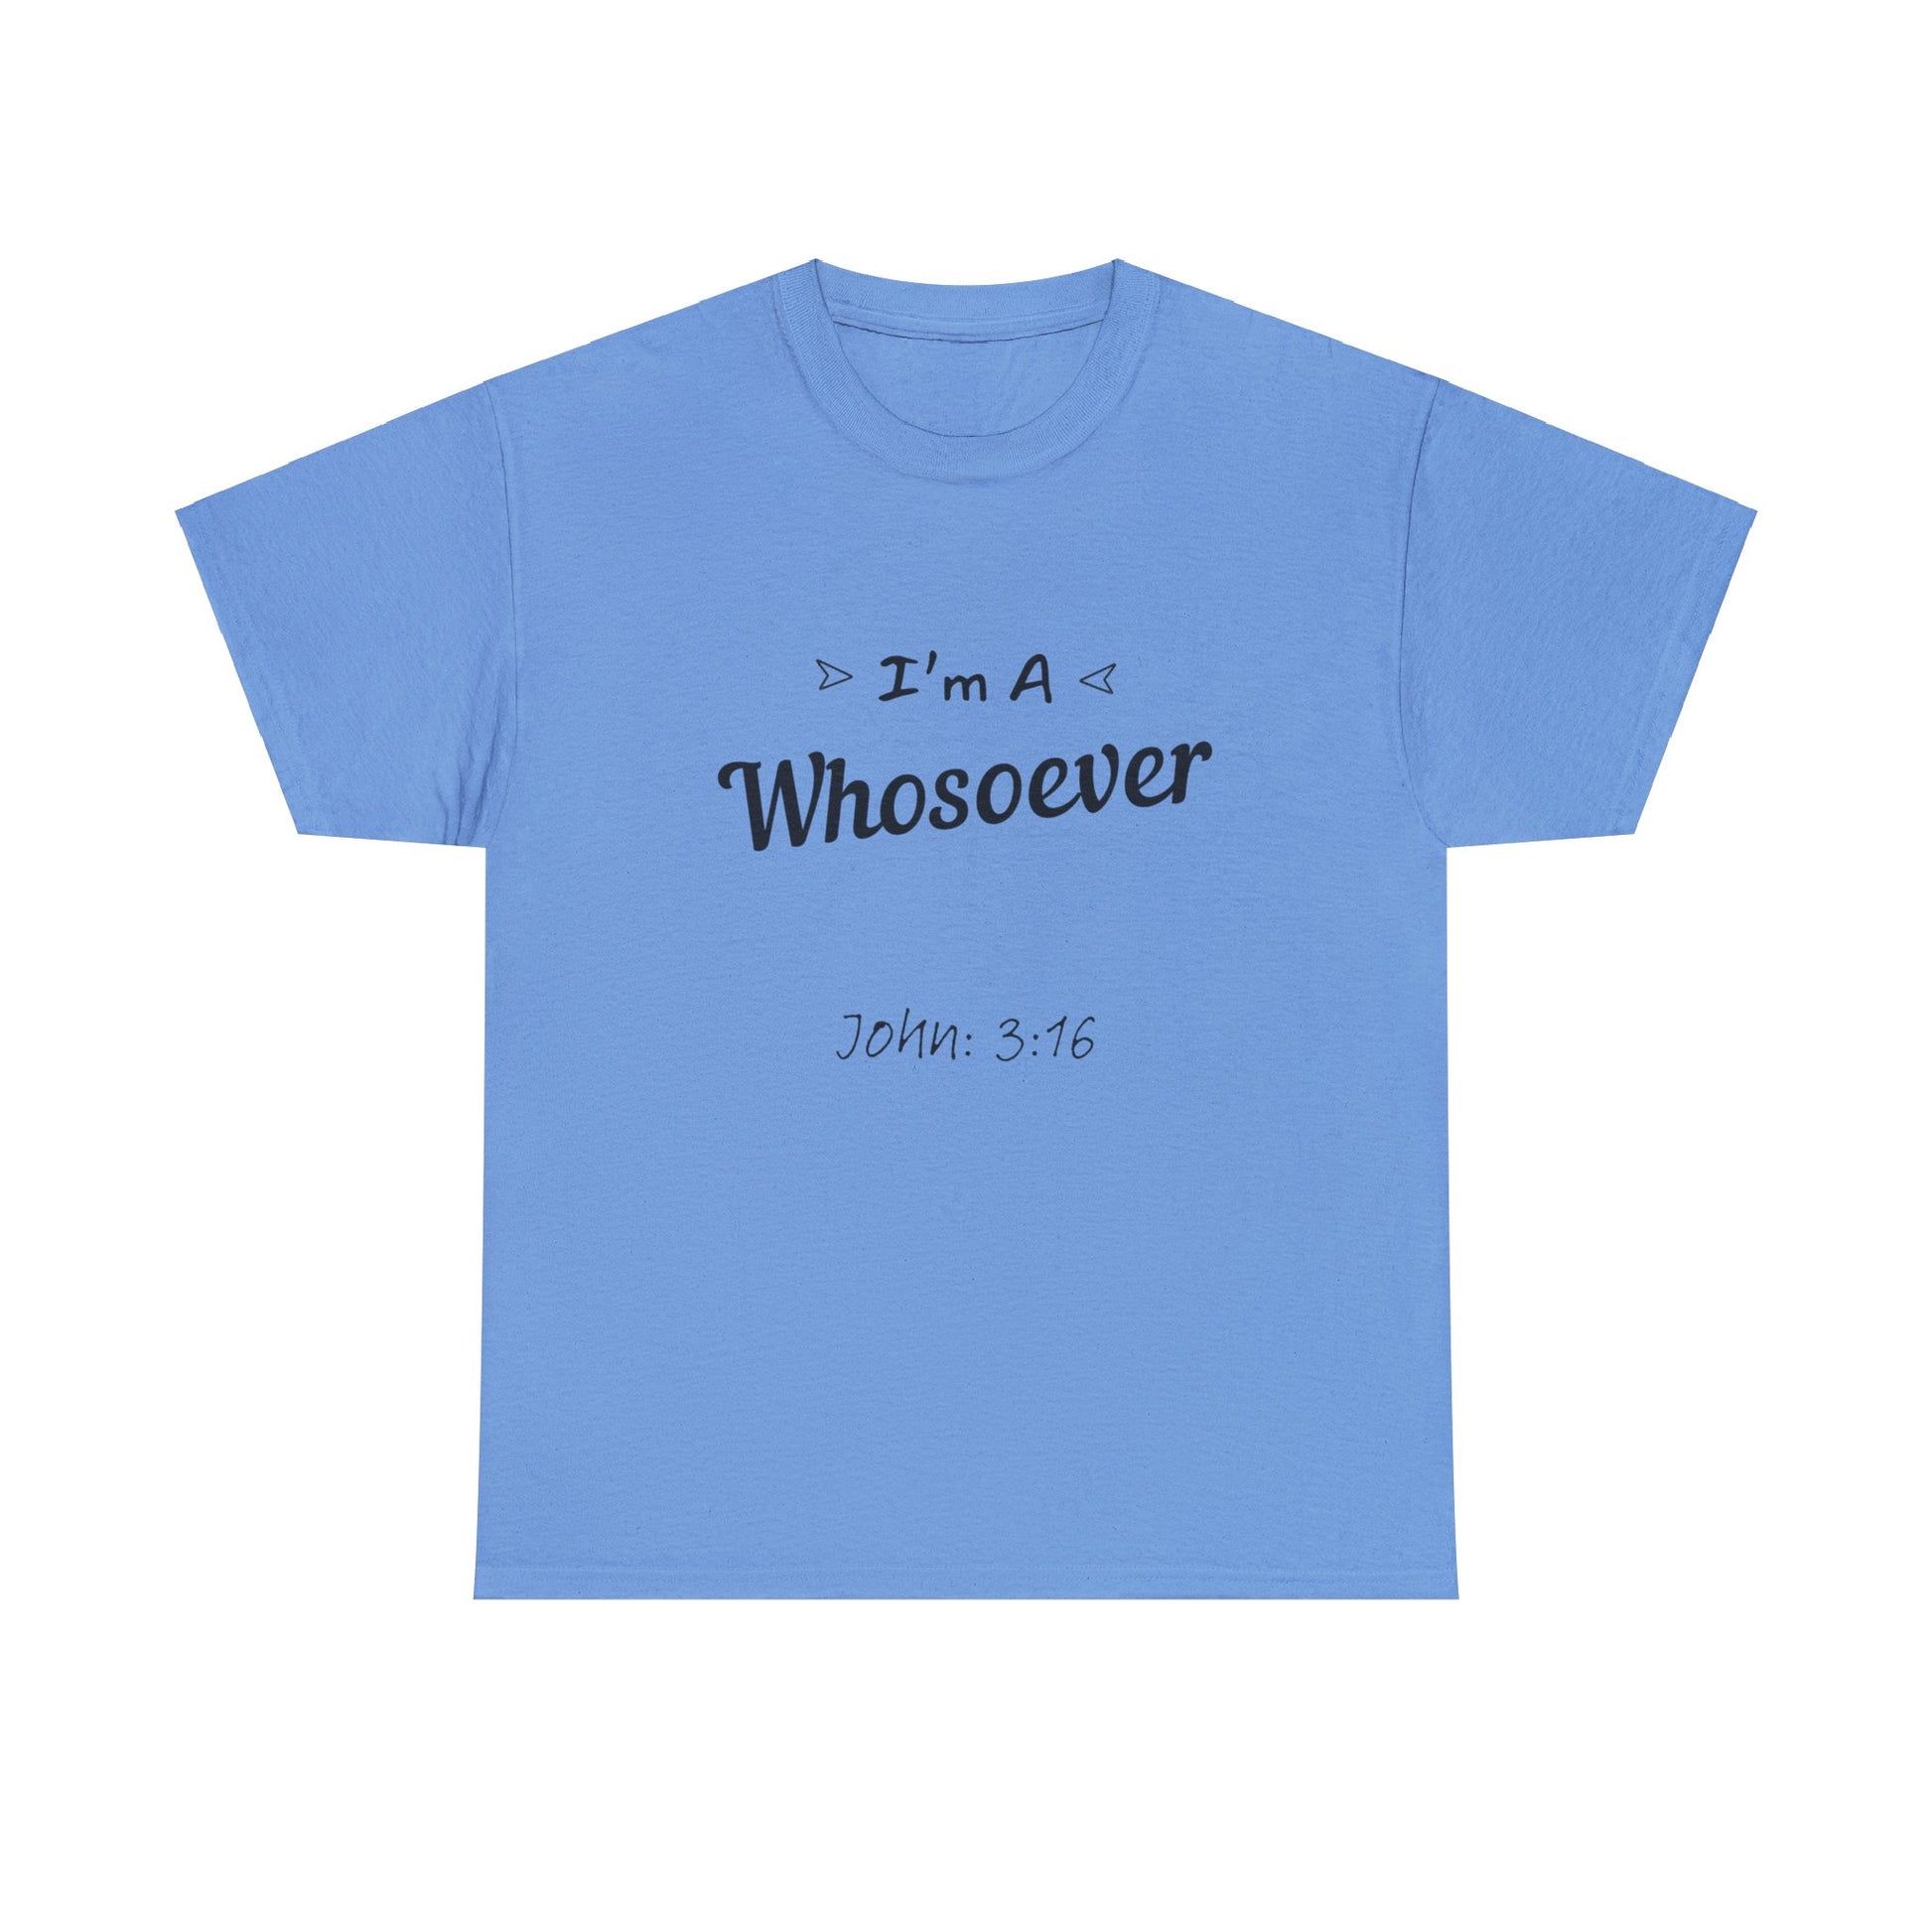 "Everlasting life promise T-shirt inspired by John 3:16 for Christians."